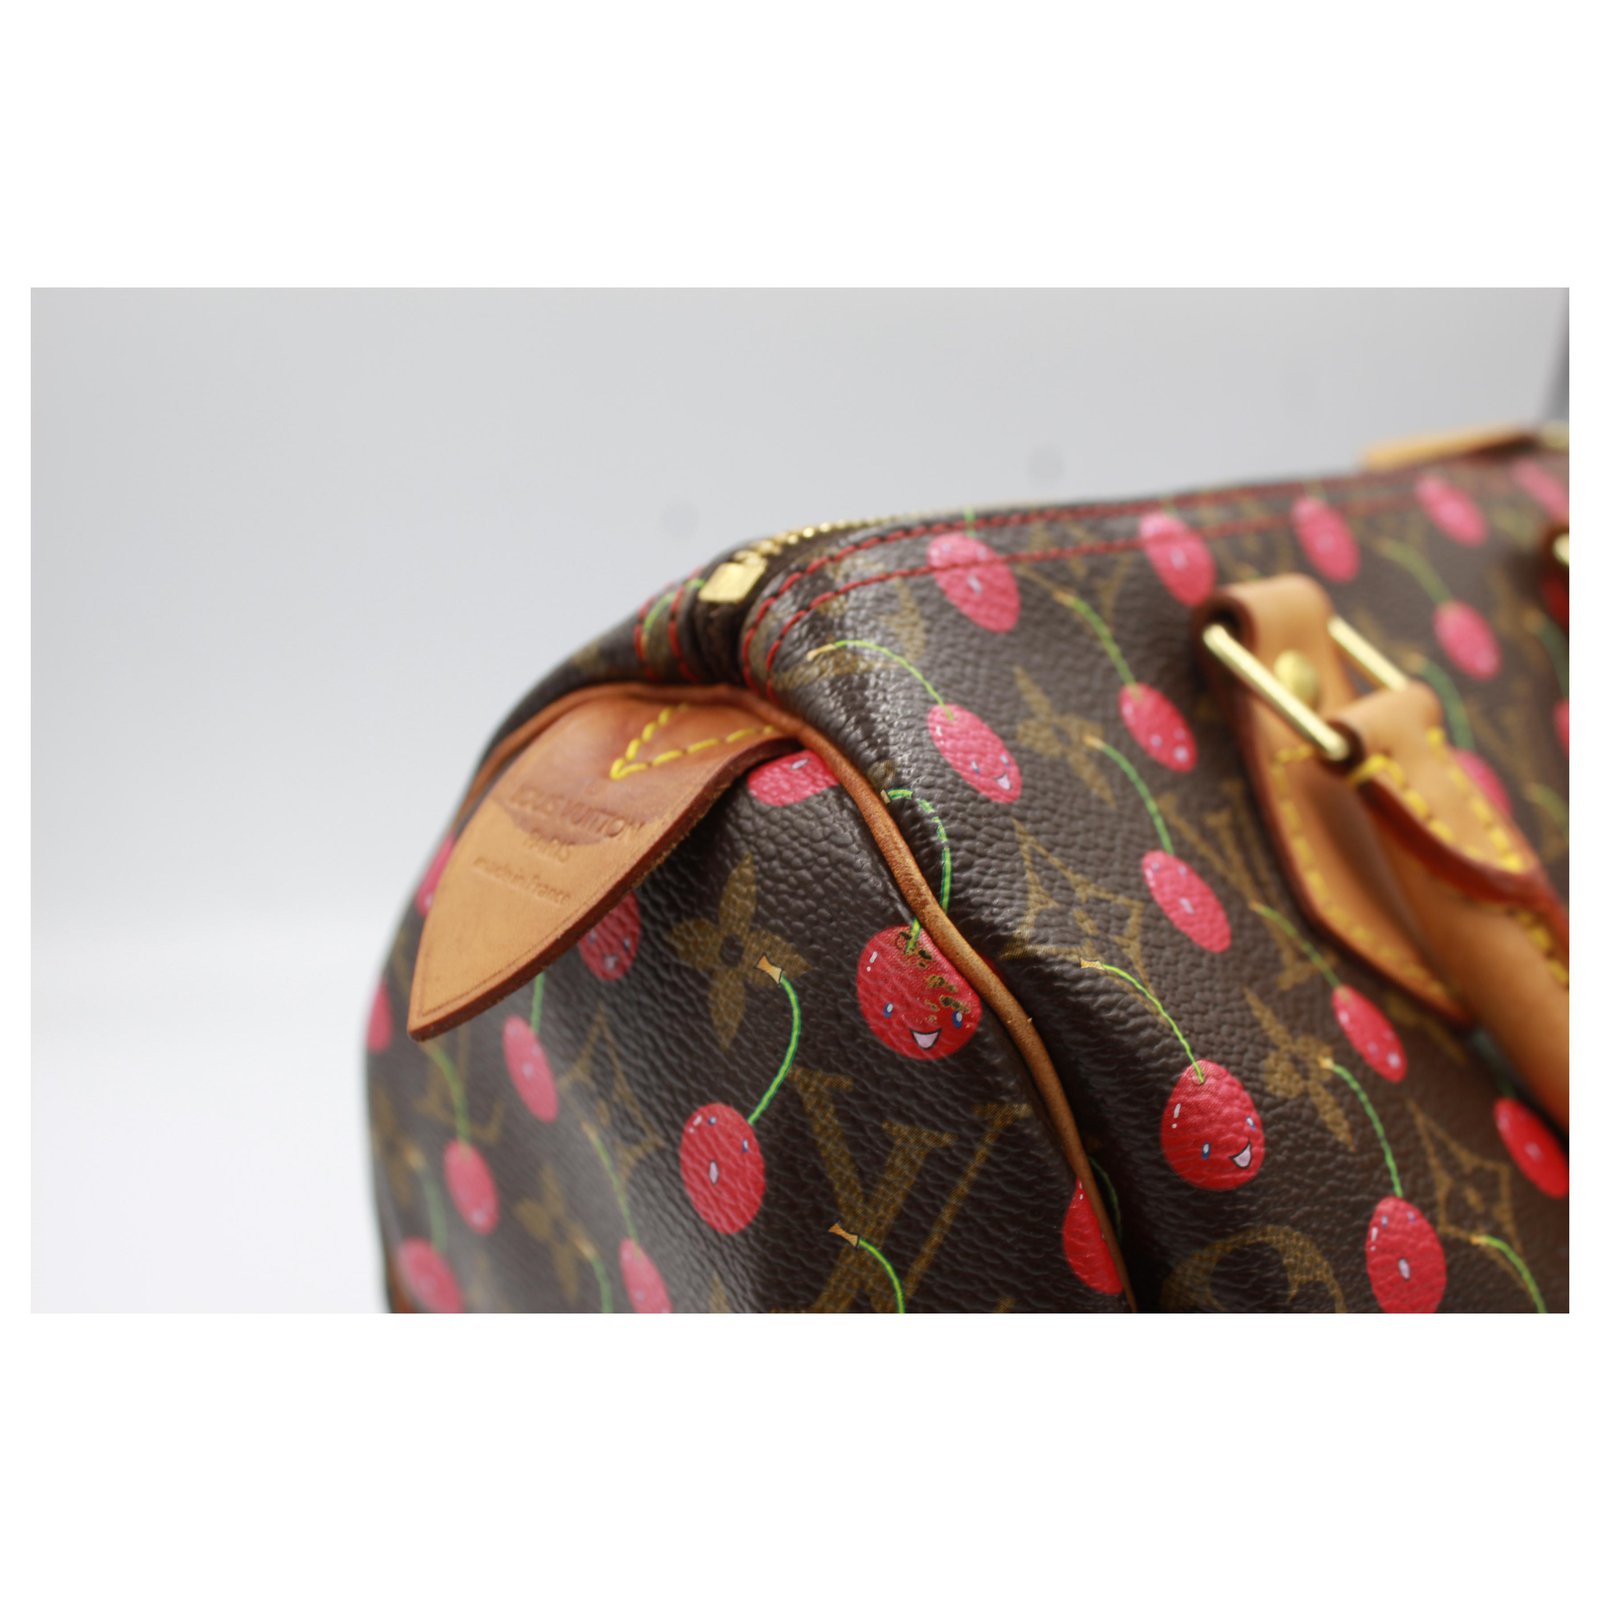 Louis Vuitton Speedy 25 handbag with cherries, by haruki Murakami Brown Red  Cloth ref.195131 - Joli Closet